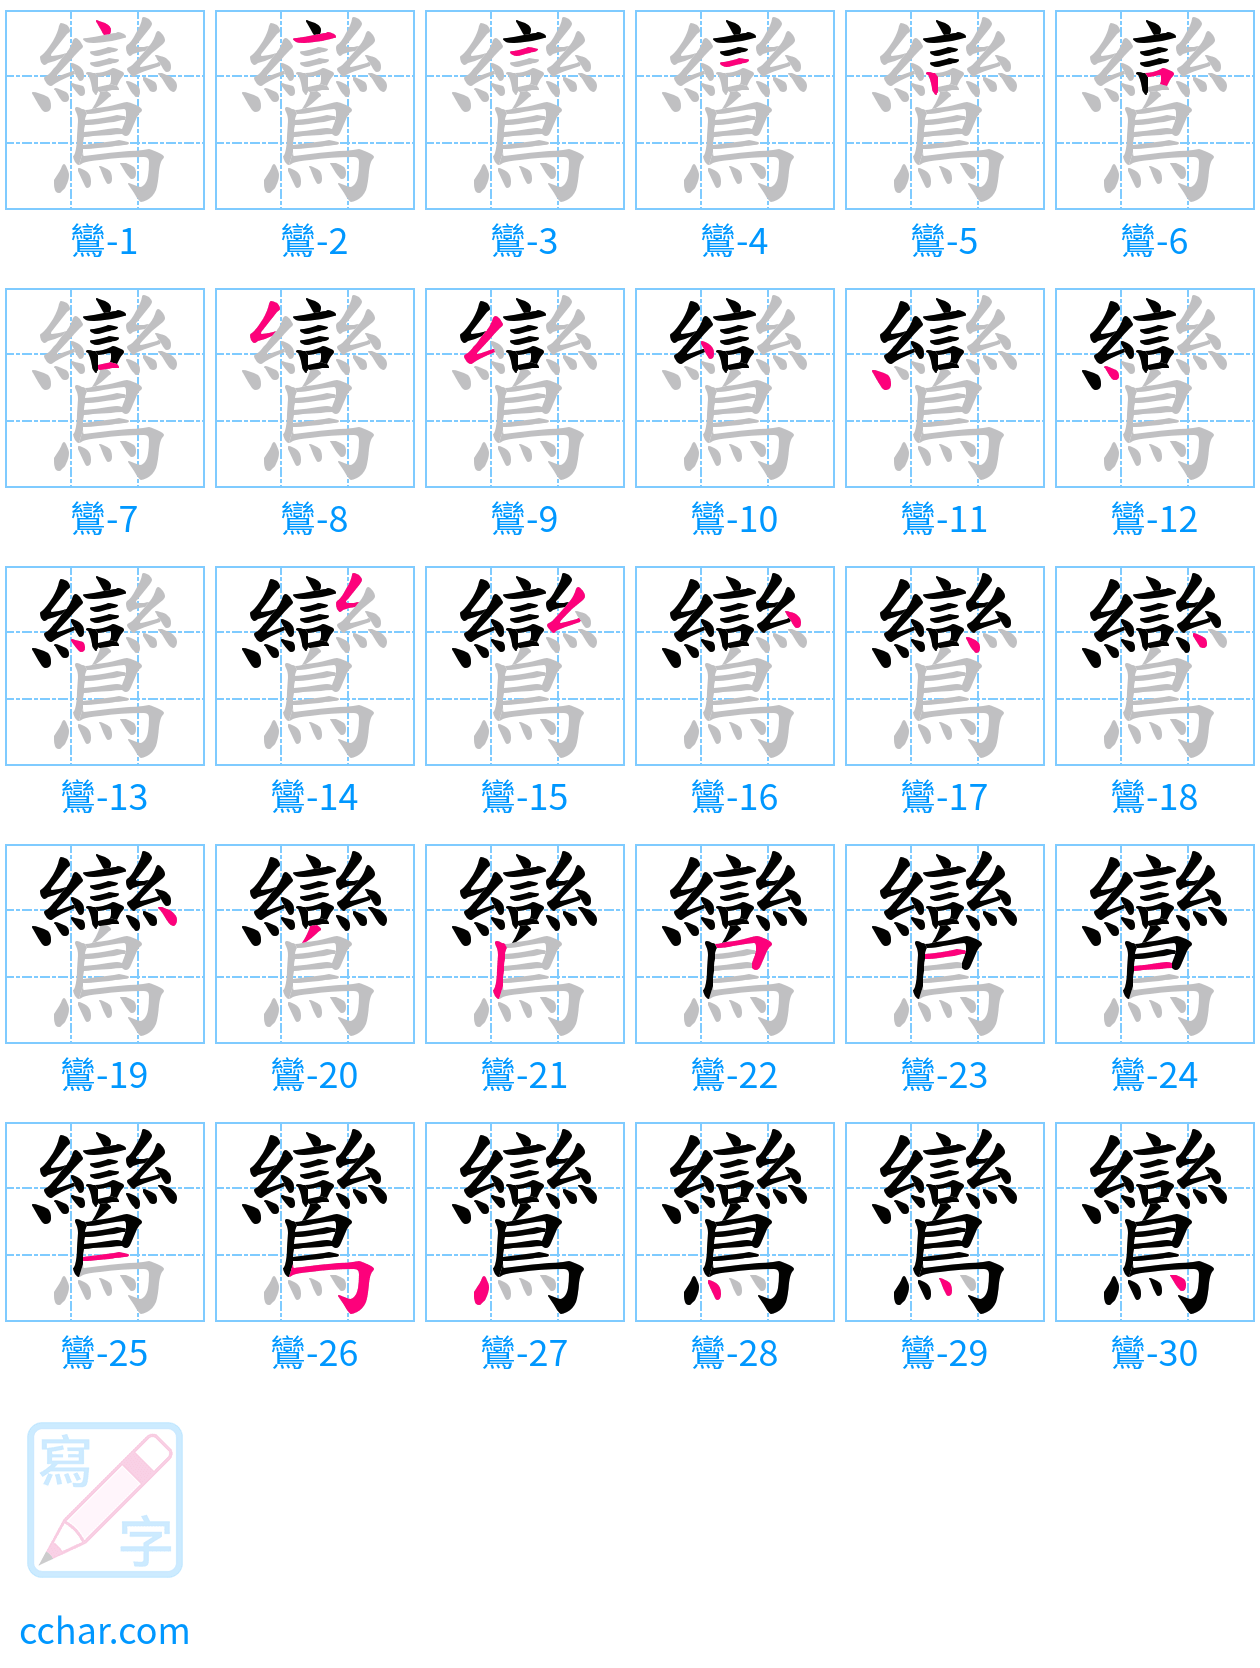 鸞 stroke order step-by-step diagram